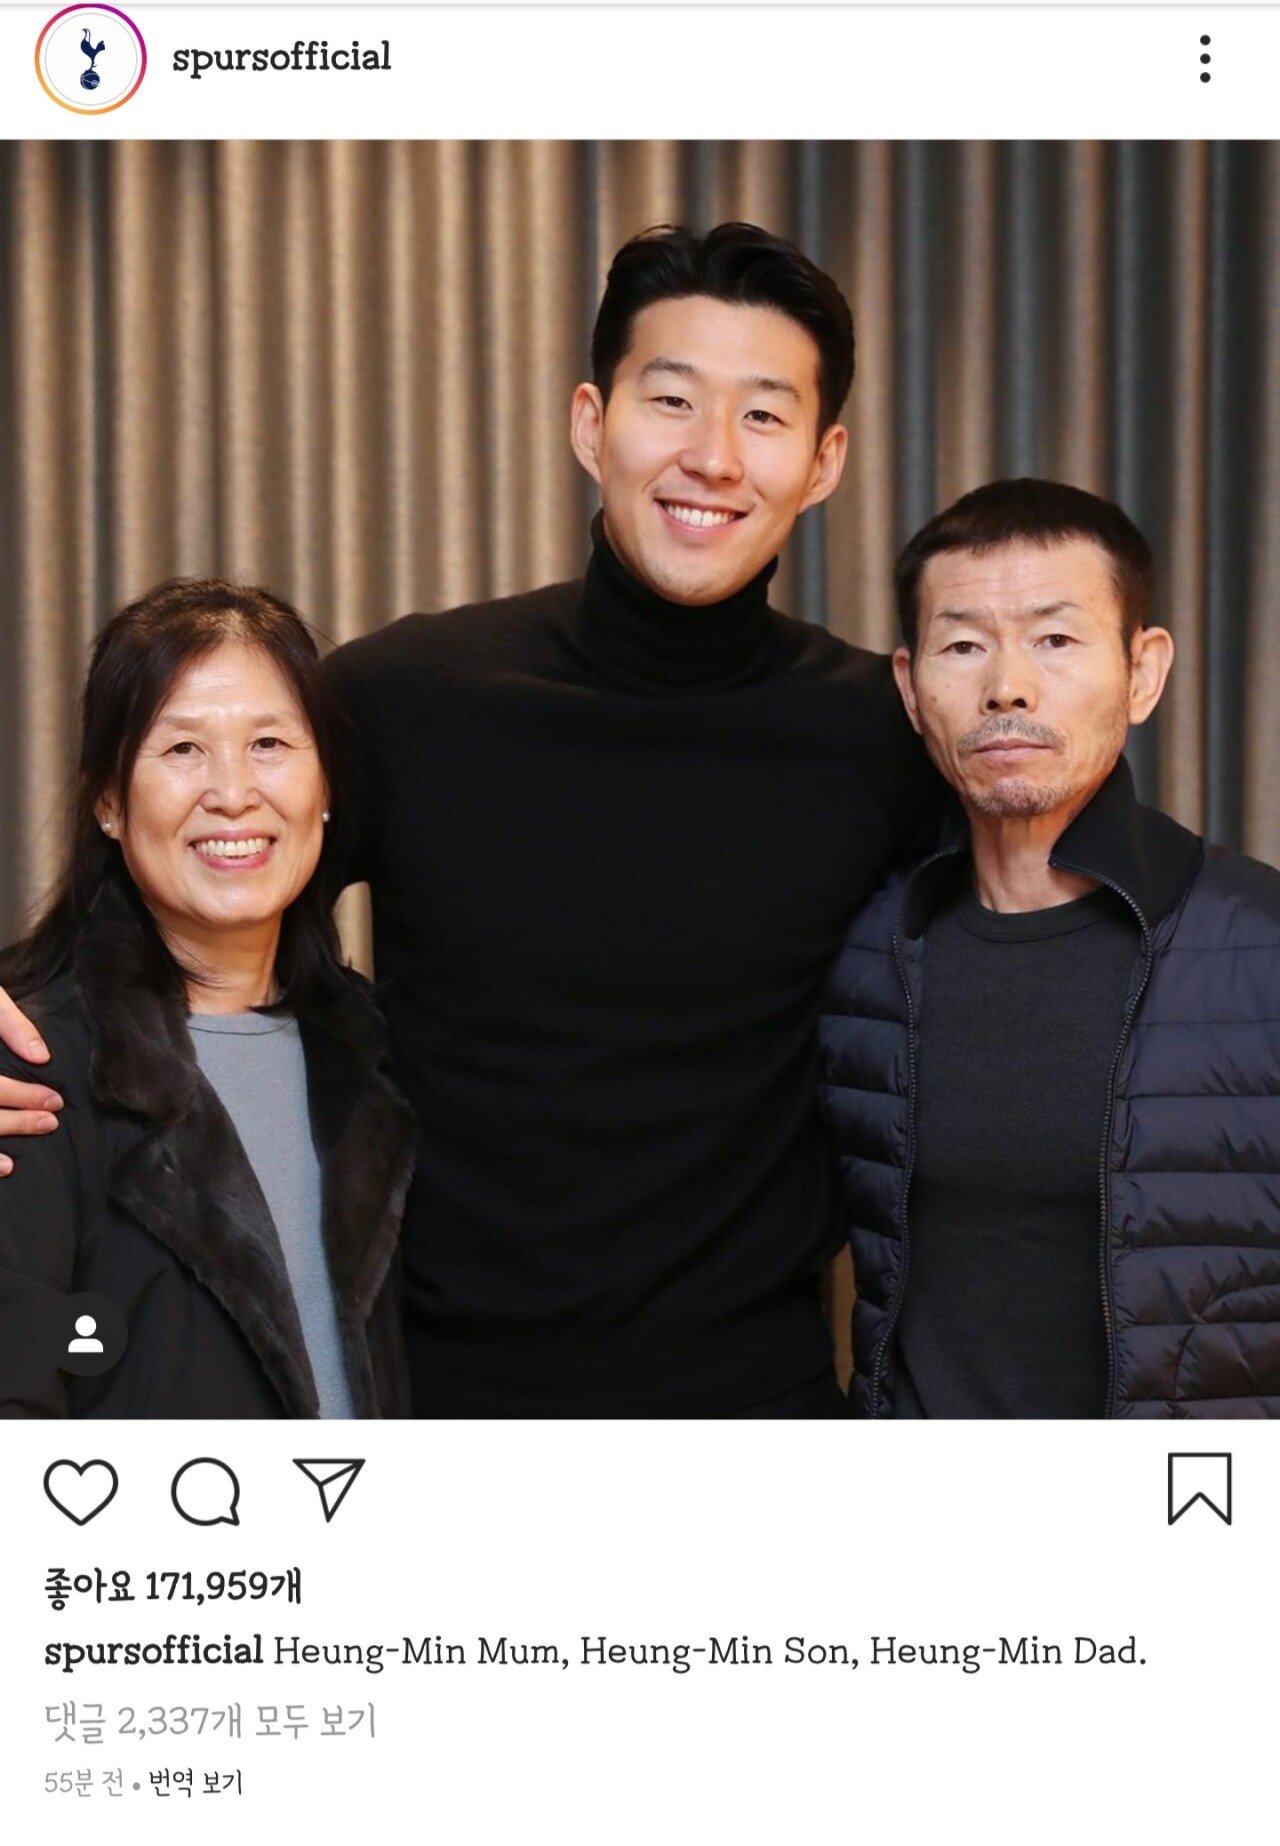 Tottenham official star Son Heung-min's family joke